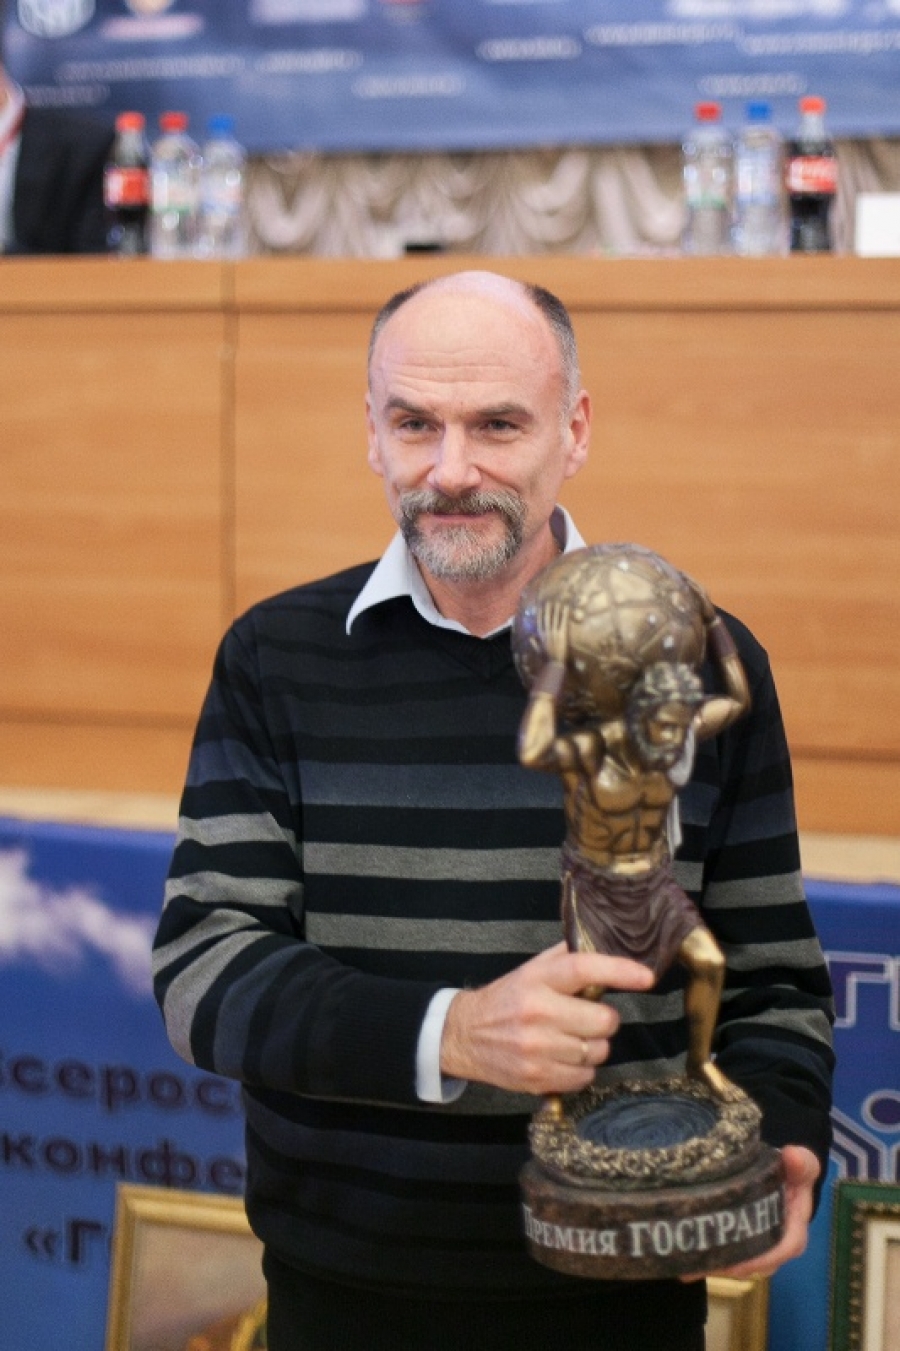 Фонд Олега Дерипаска «Вольное Дело» стал лауреатом Общественной премии «Госгрант» 2012 года